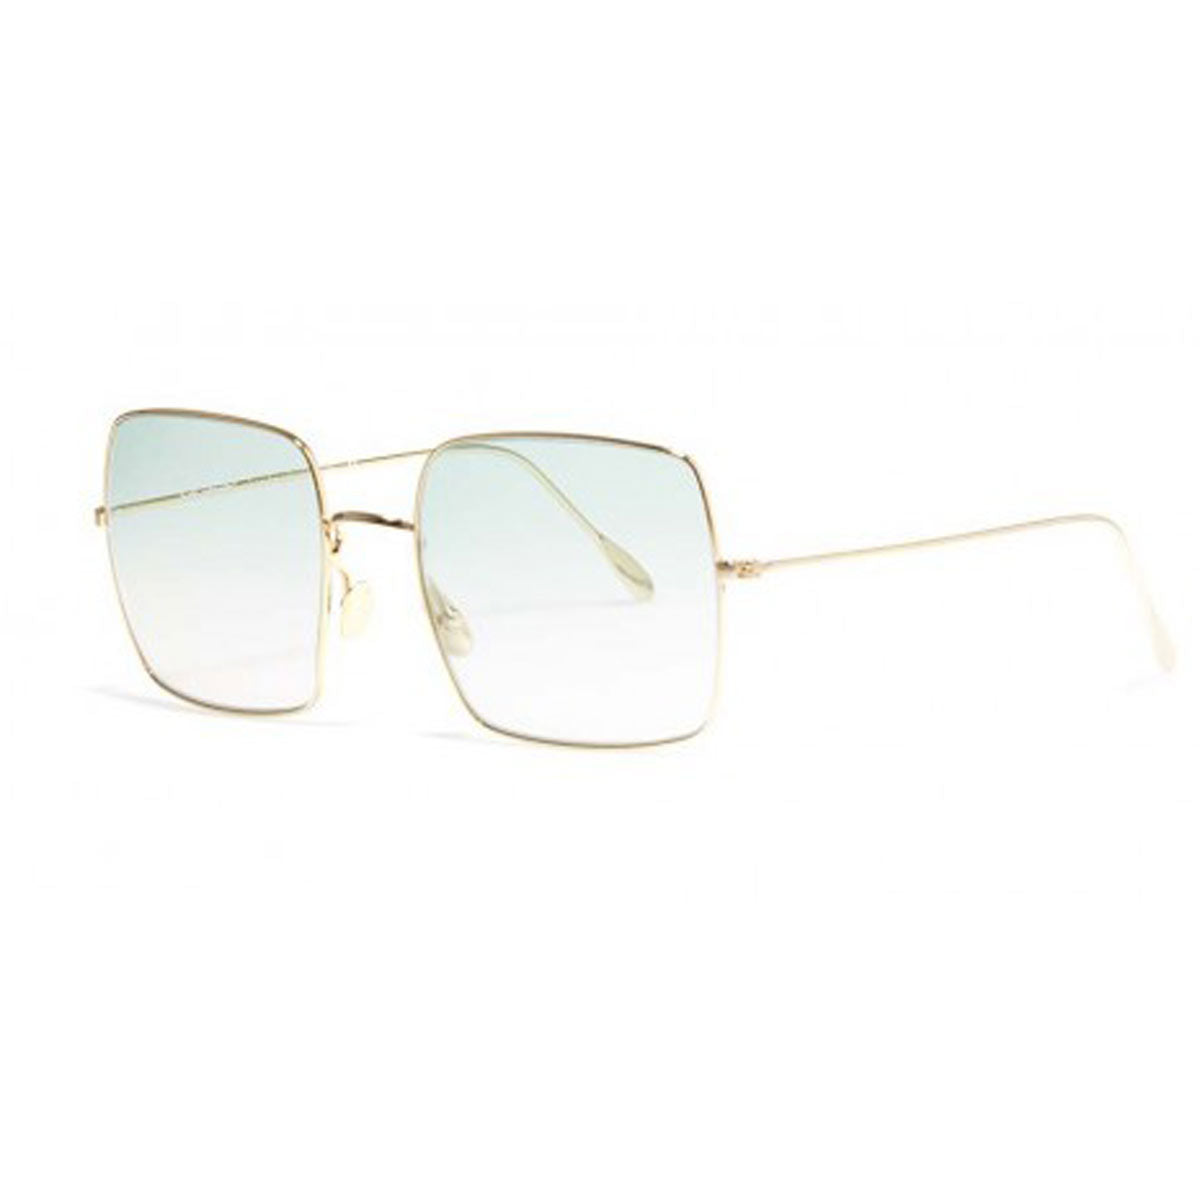 Bob Sdrunk Women's Sunglasses - Linda Green Gradient Lens / LINDA-102-57-21-140